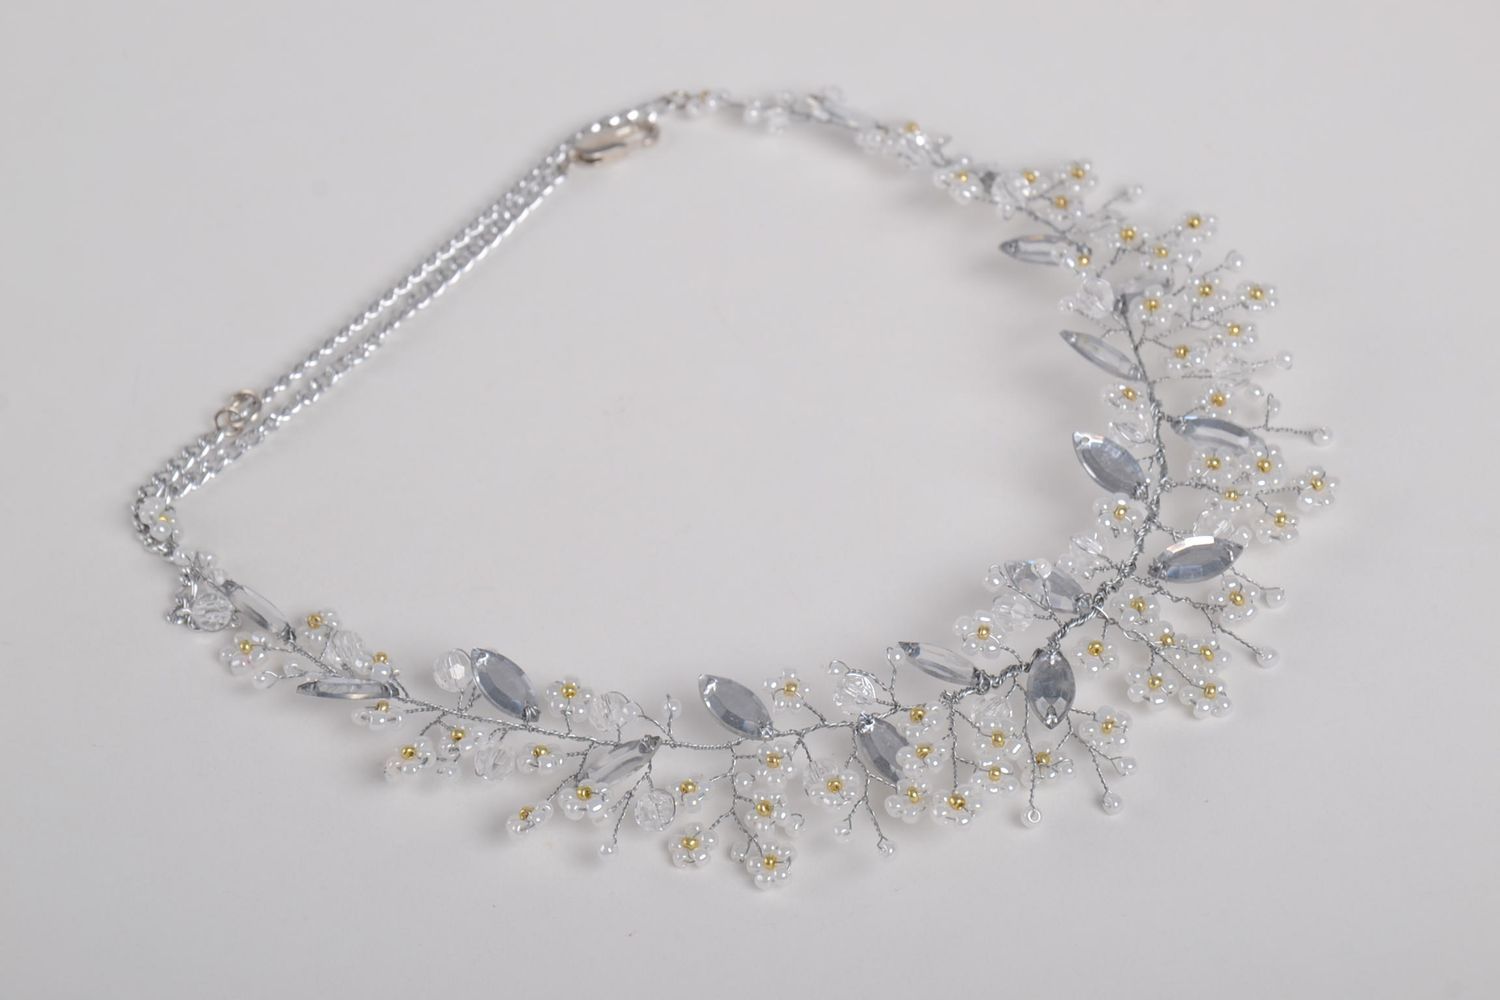 Handmade beaded accessory stylish wedding jewelry elegant necklace gift photo 5